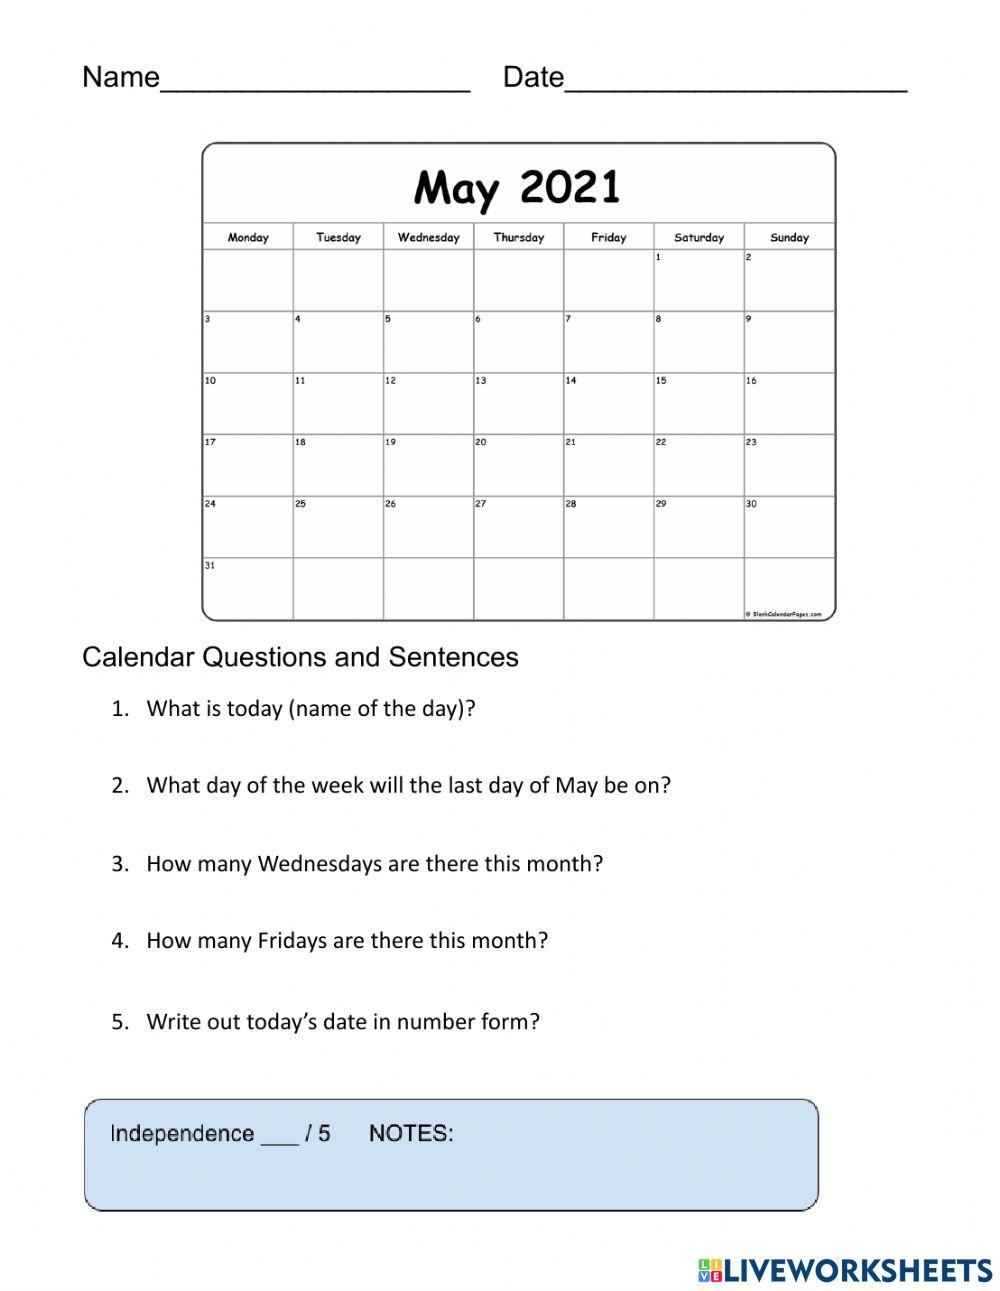 5-5-21 Calendar Questions